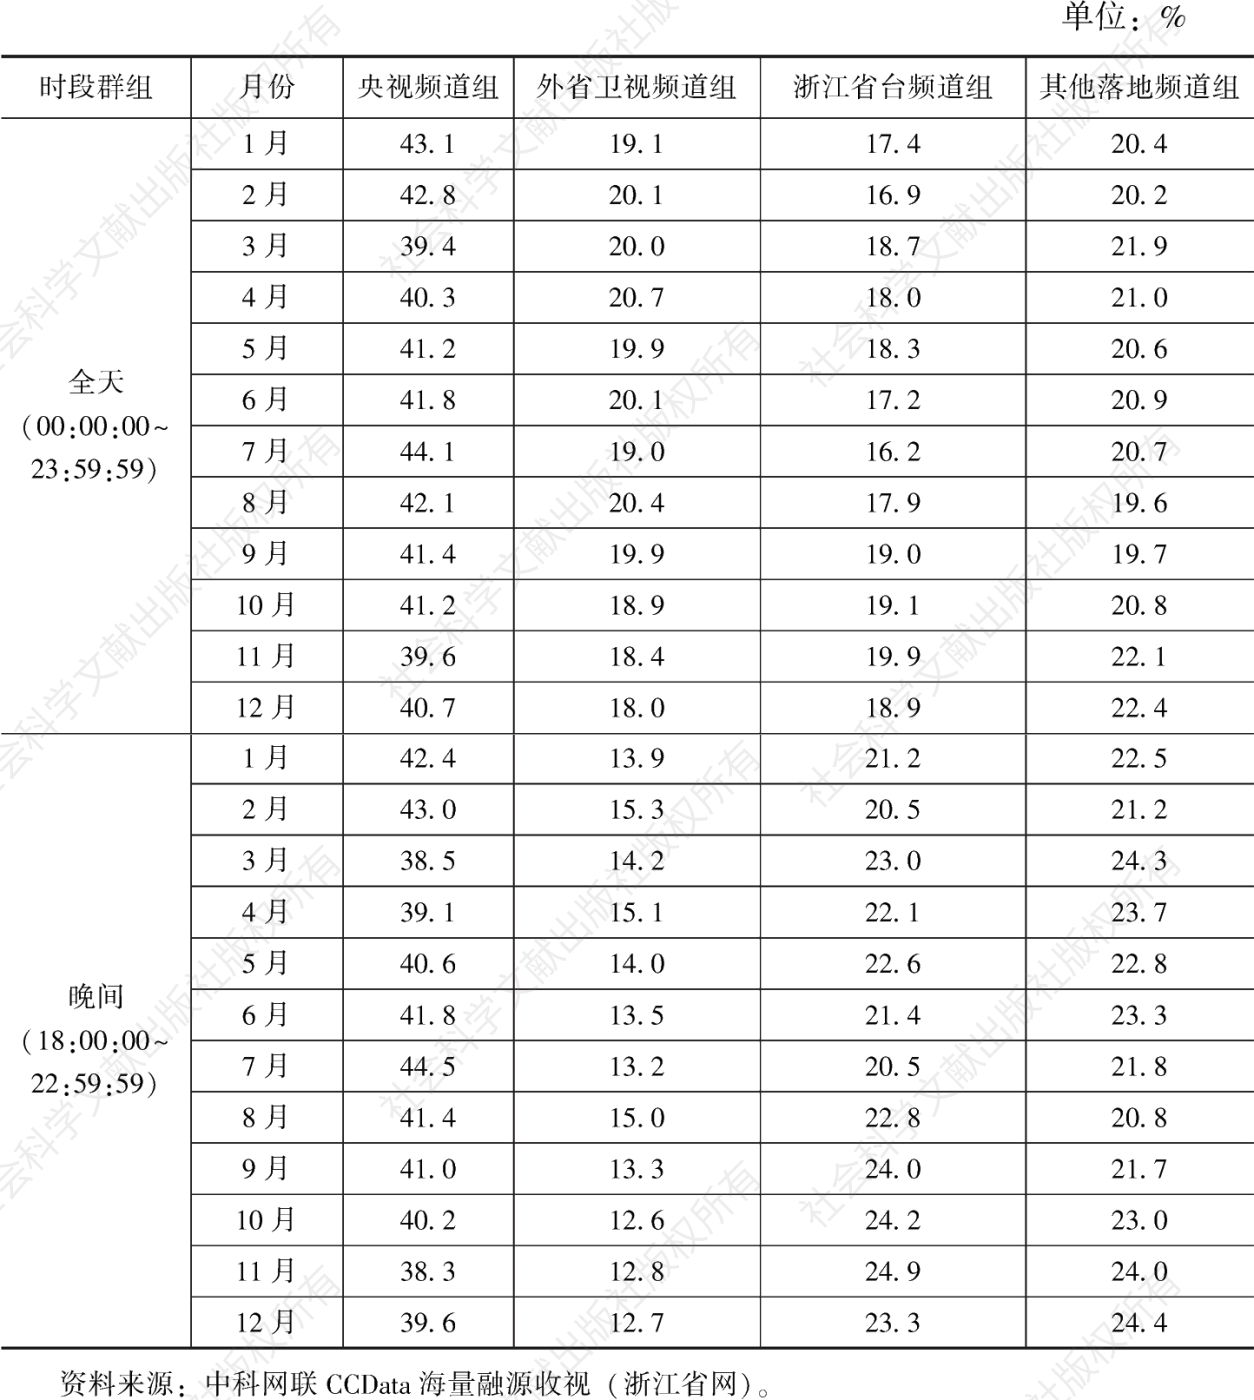 表3 2021年浙江省网各级别频道组全天/晚间时段收视份额分月情况